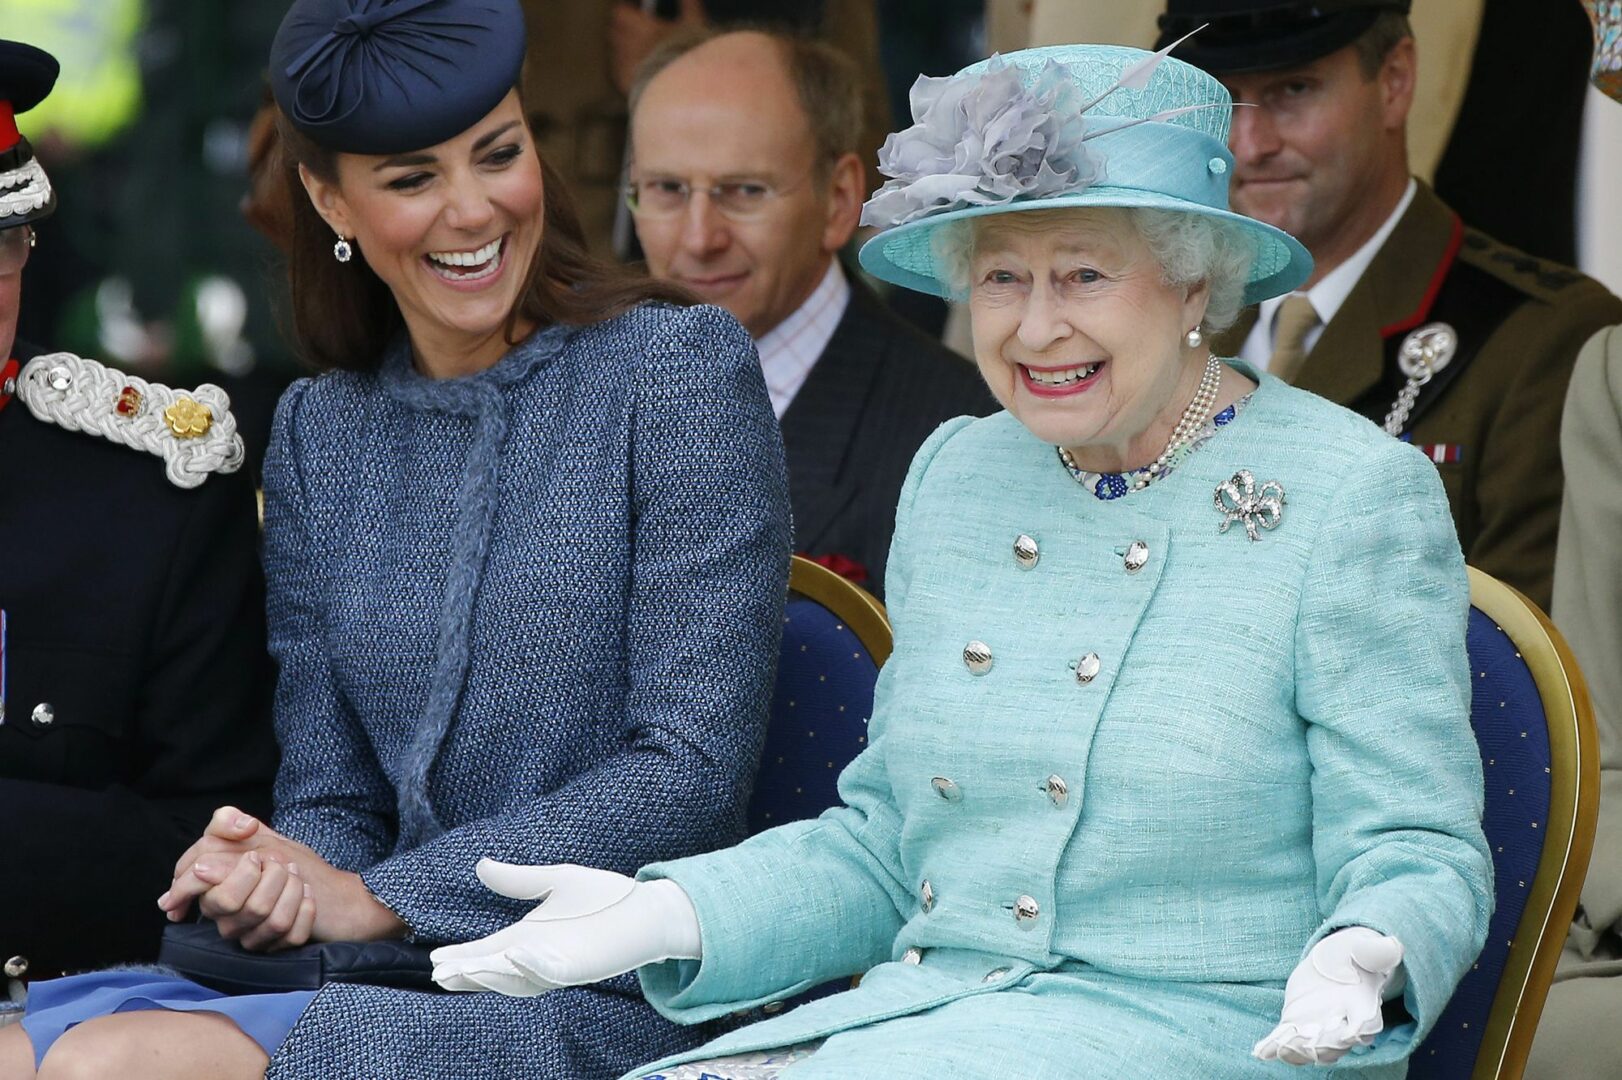  La reine d'Angleterre avec la princesse Kate Middleton, avenantes devant le grand public à Nottingham en 2012 @ REUTERS/Phil Noble